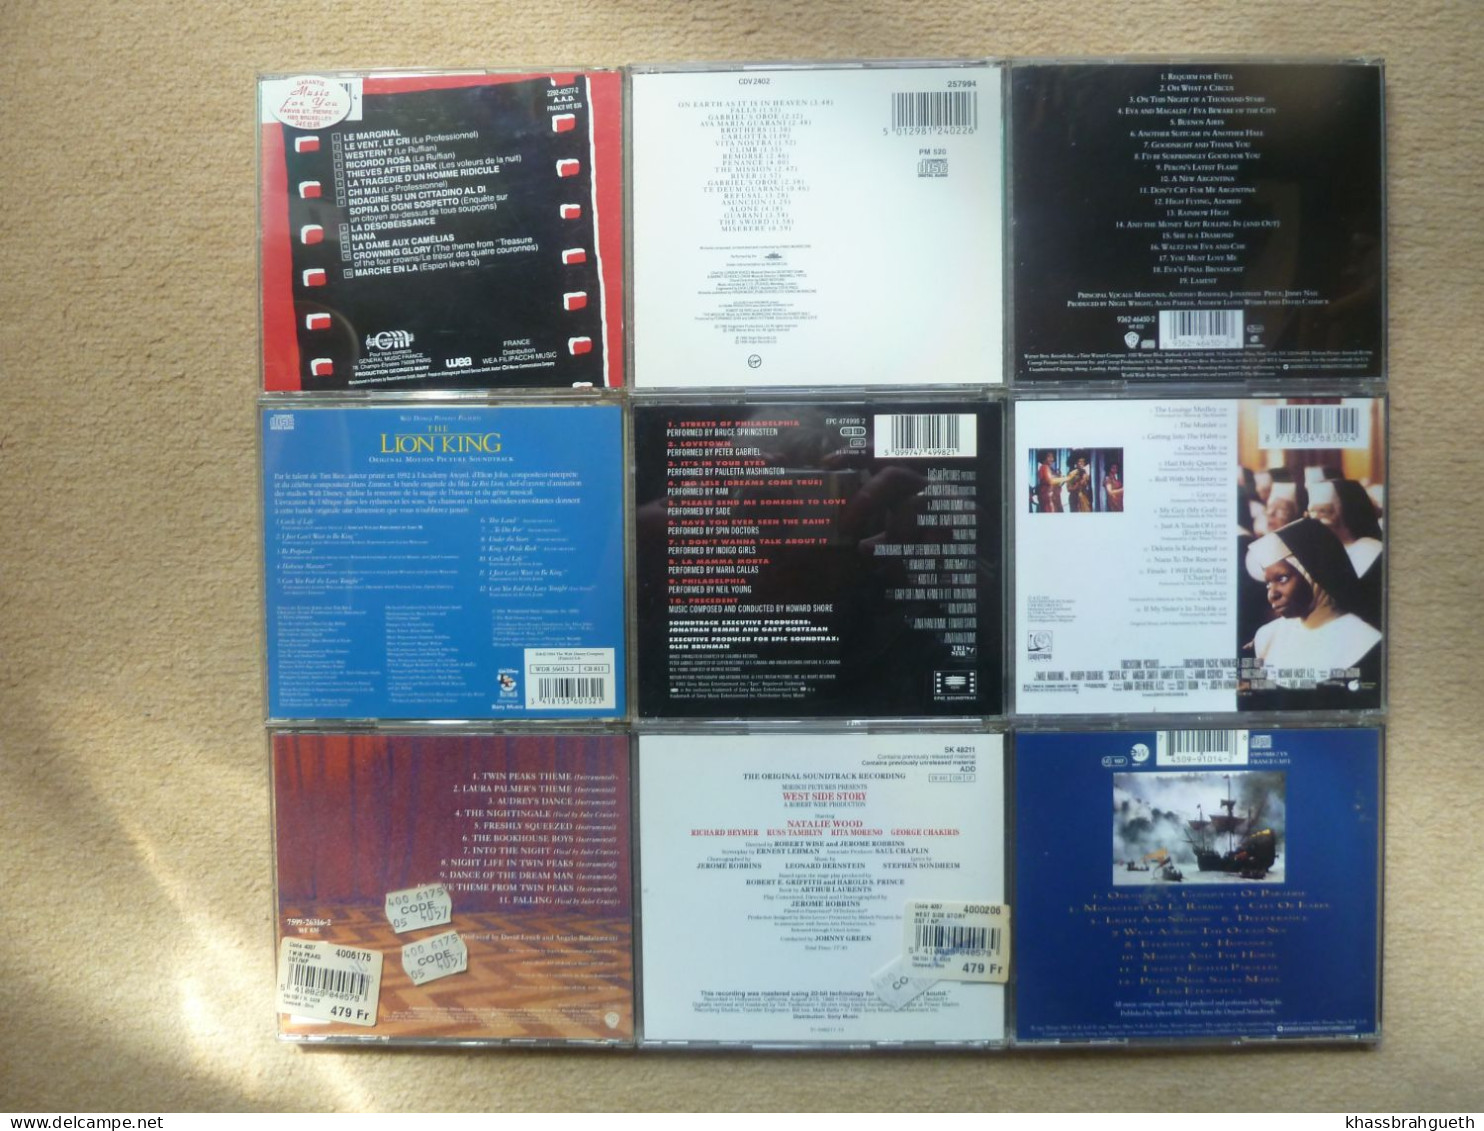 MUSIQUES DE FILMS - LOT 12 CD - E.MORRICONE EVITA PHILADELPHIA SISTER ACT TWIN PEAKS  WSS... - Musique De Films